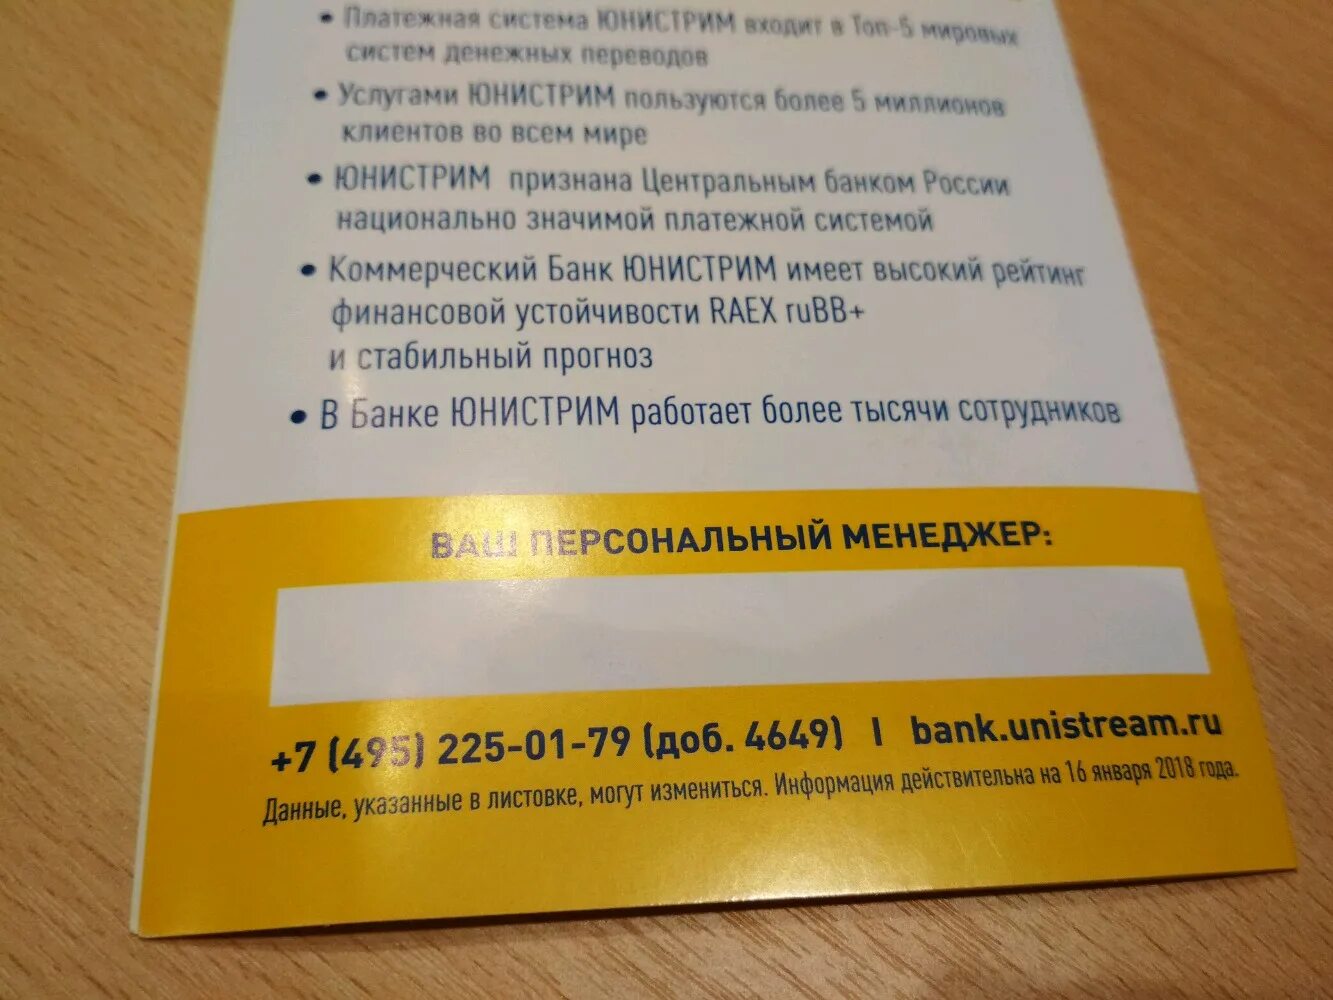 Горячая линия юнистрим банк в москве телефон. Юнистрим карта клиента. Номер Юнистрим. Юнистрим не работает. Телефон номер Юнистрим банк.